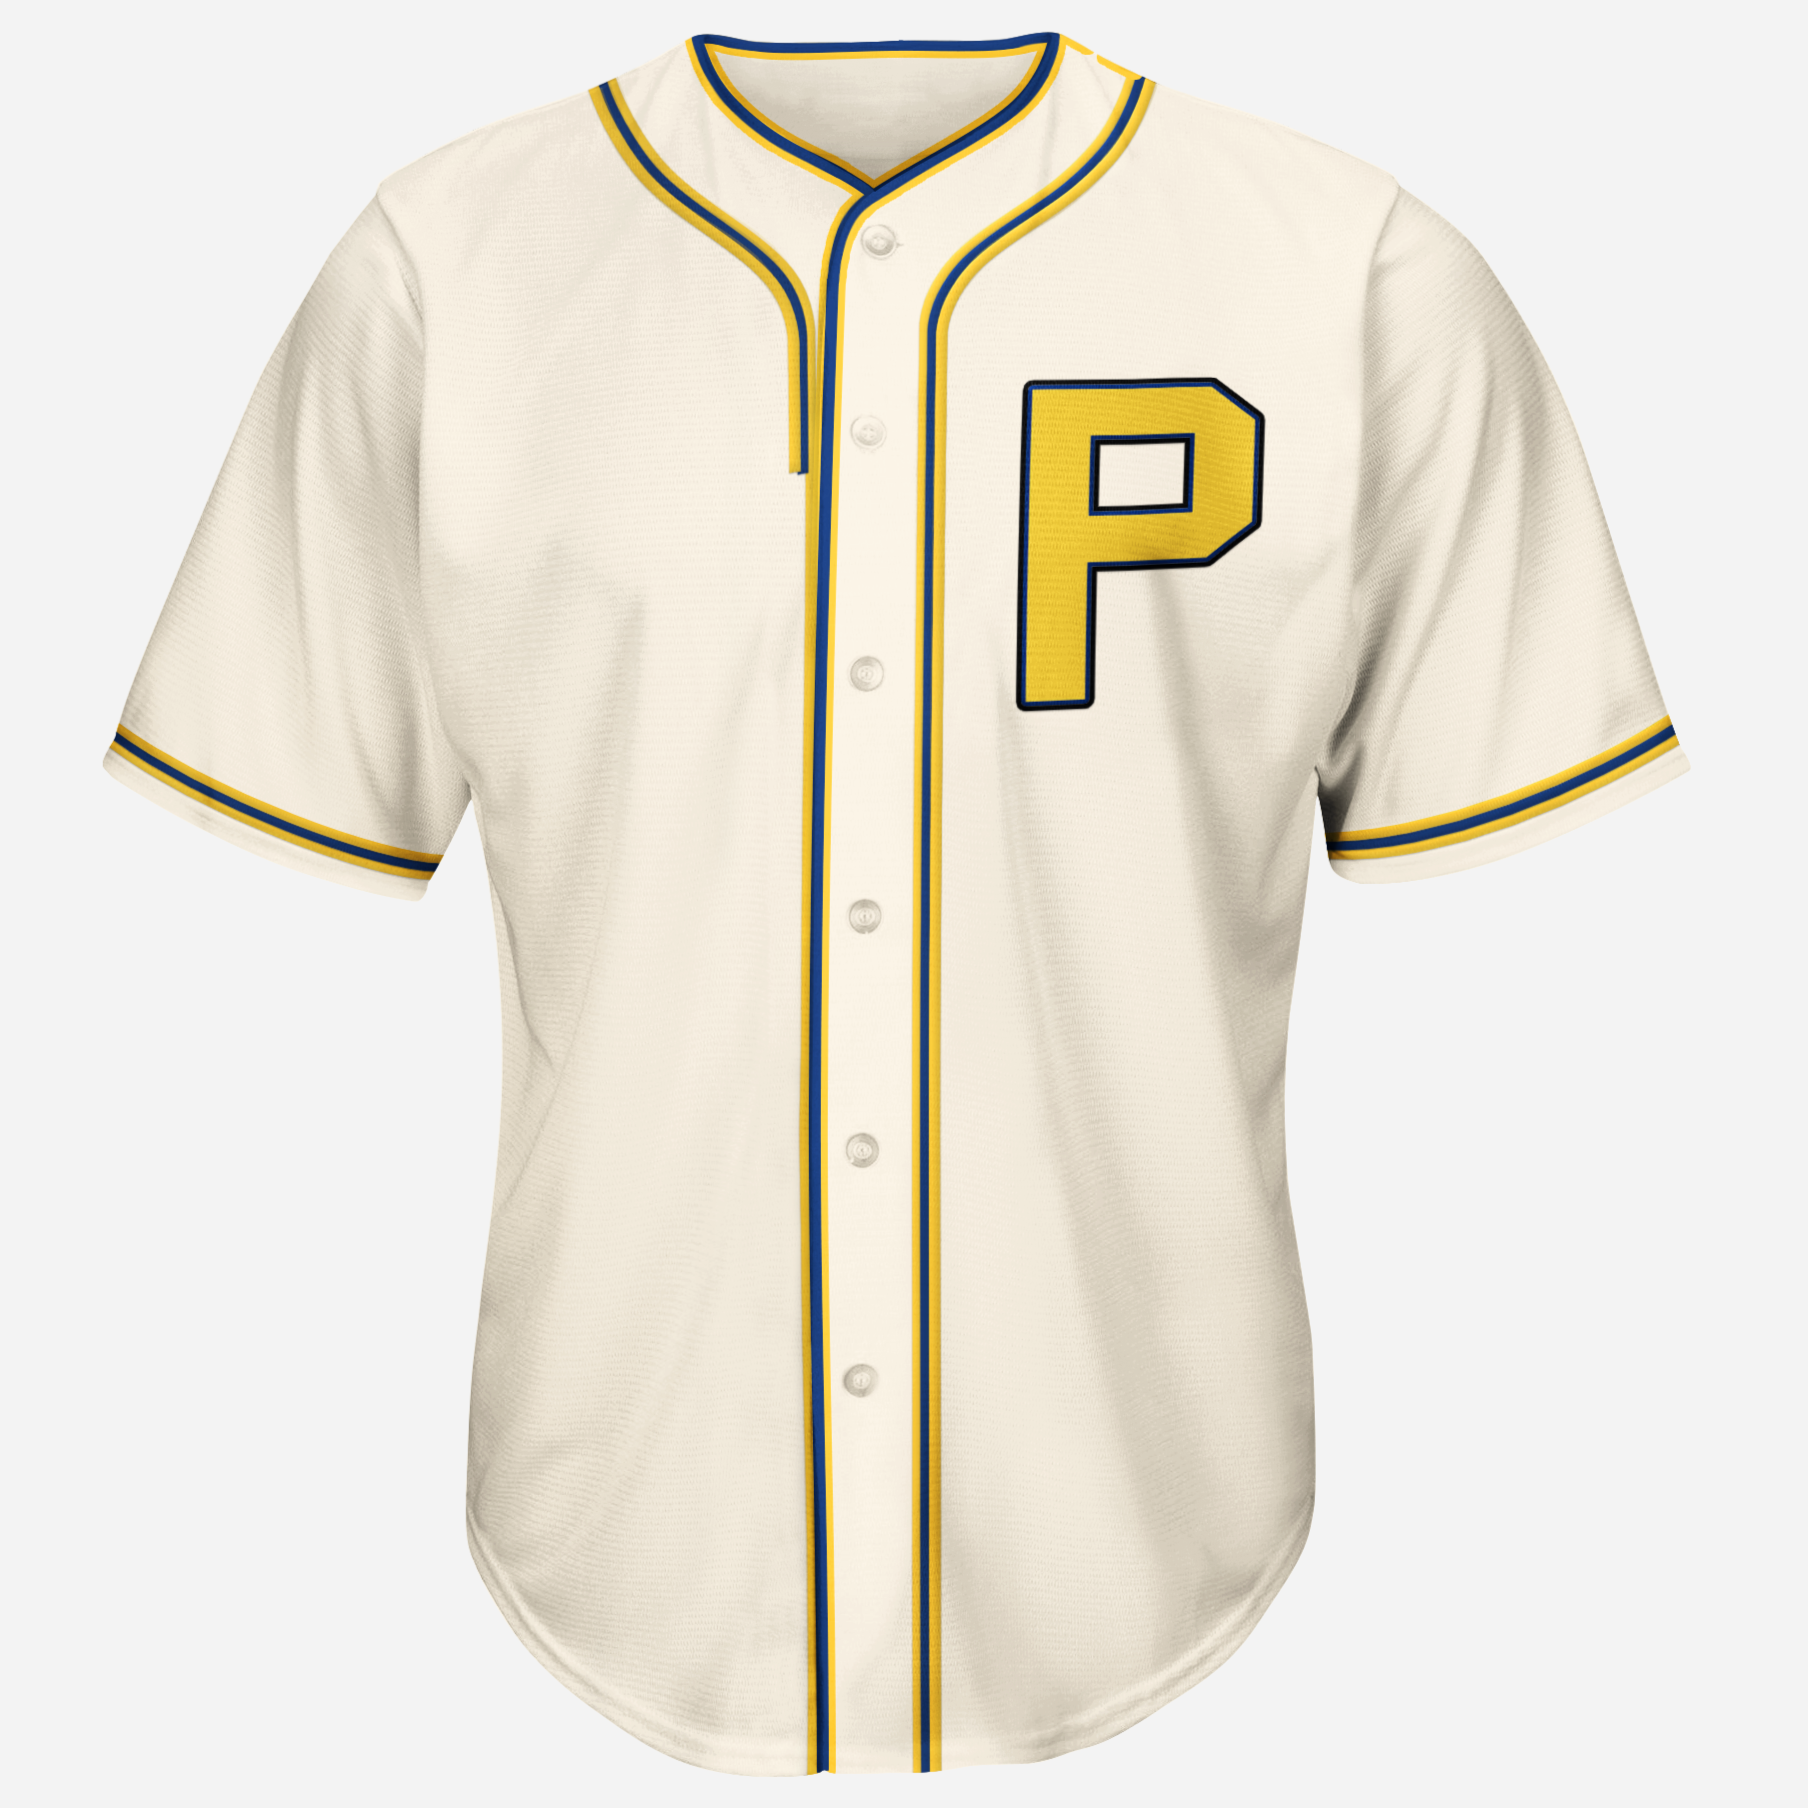 1925 philadelphia phillies jersey